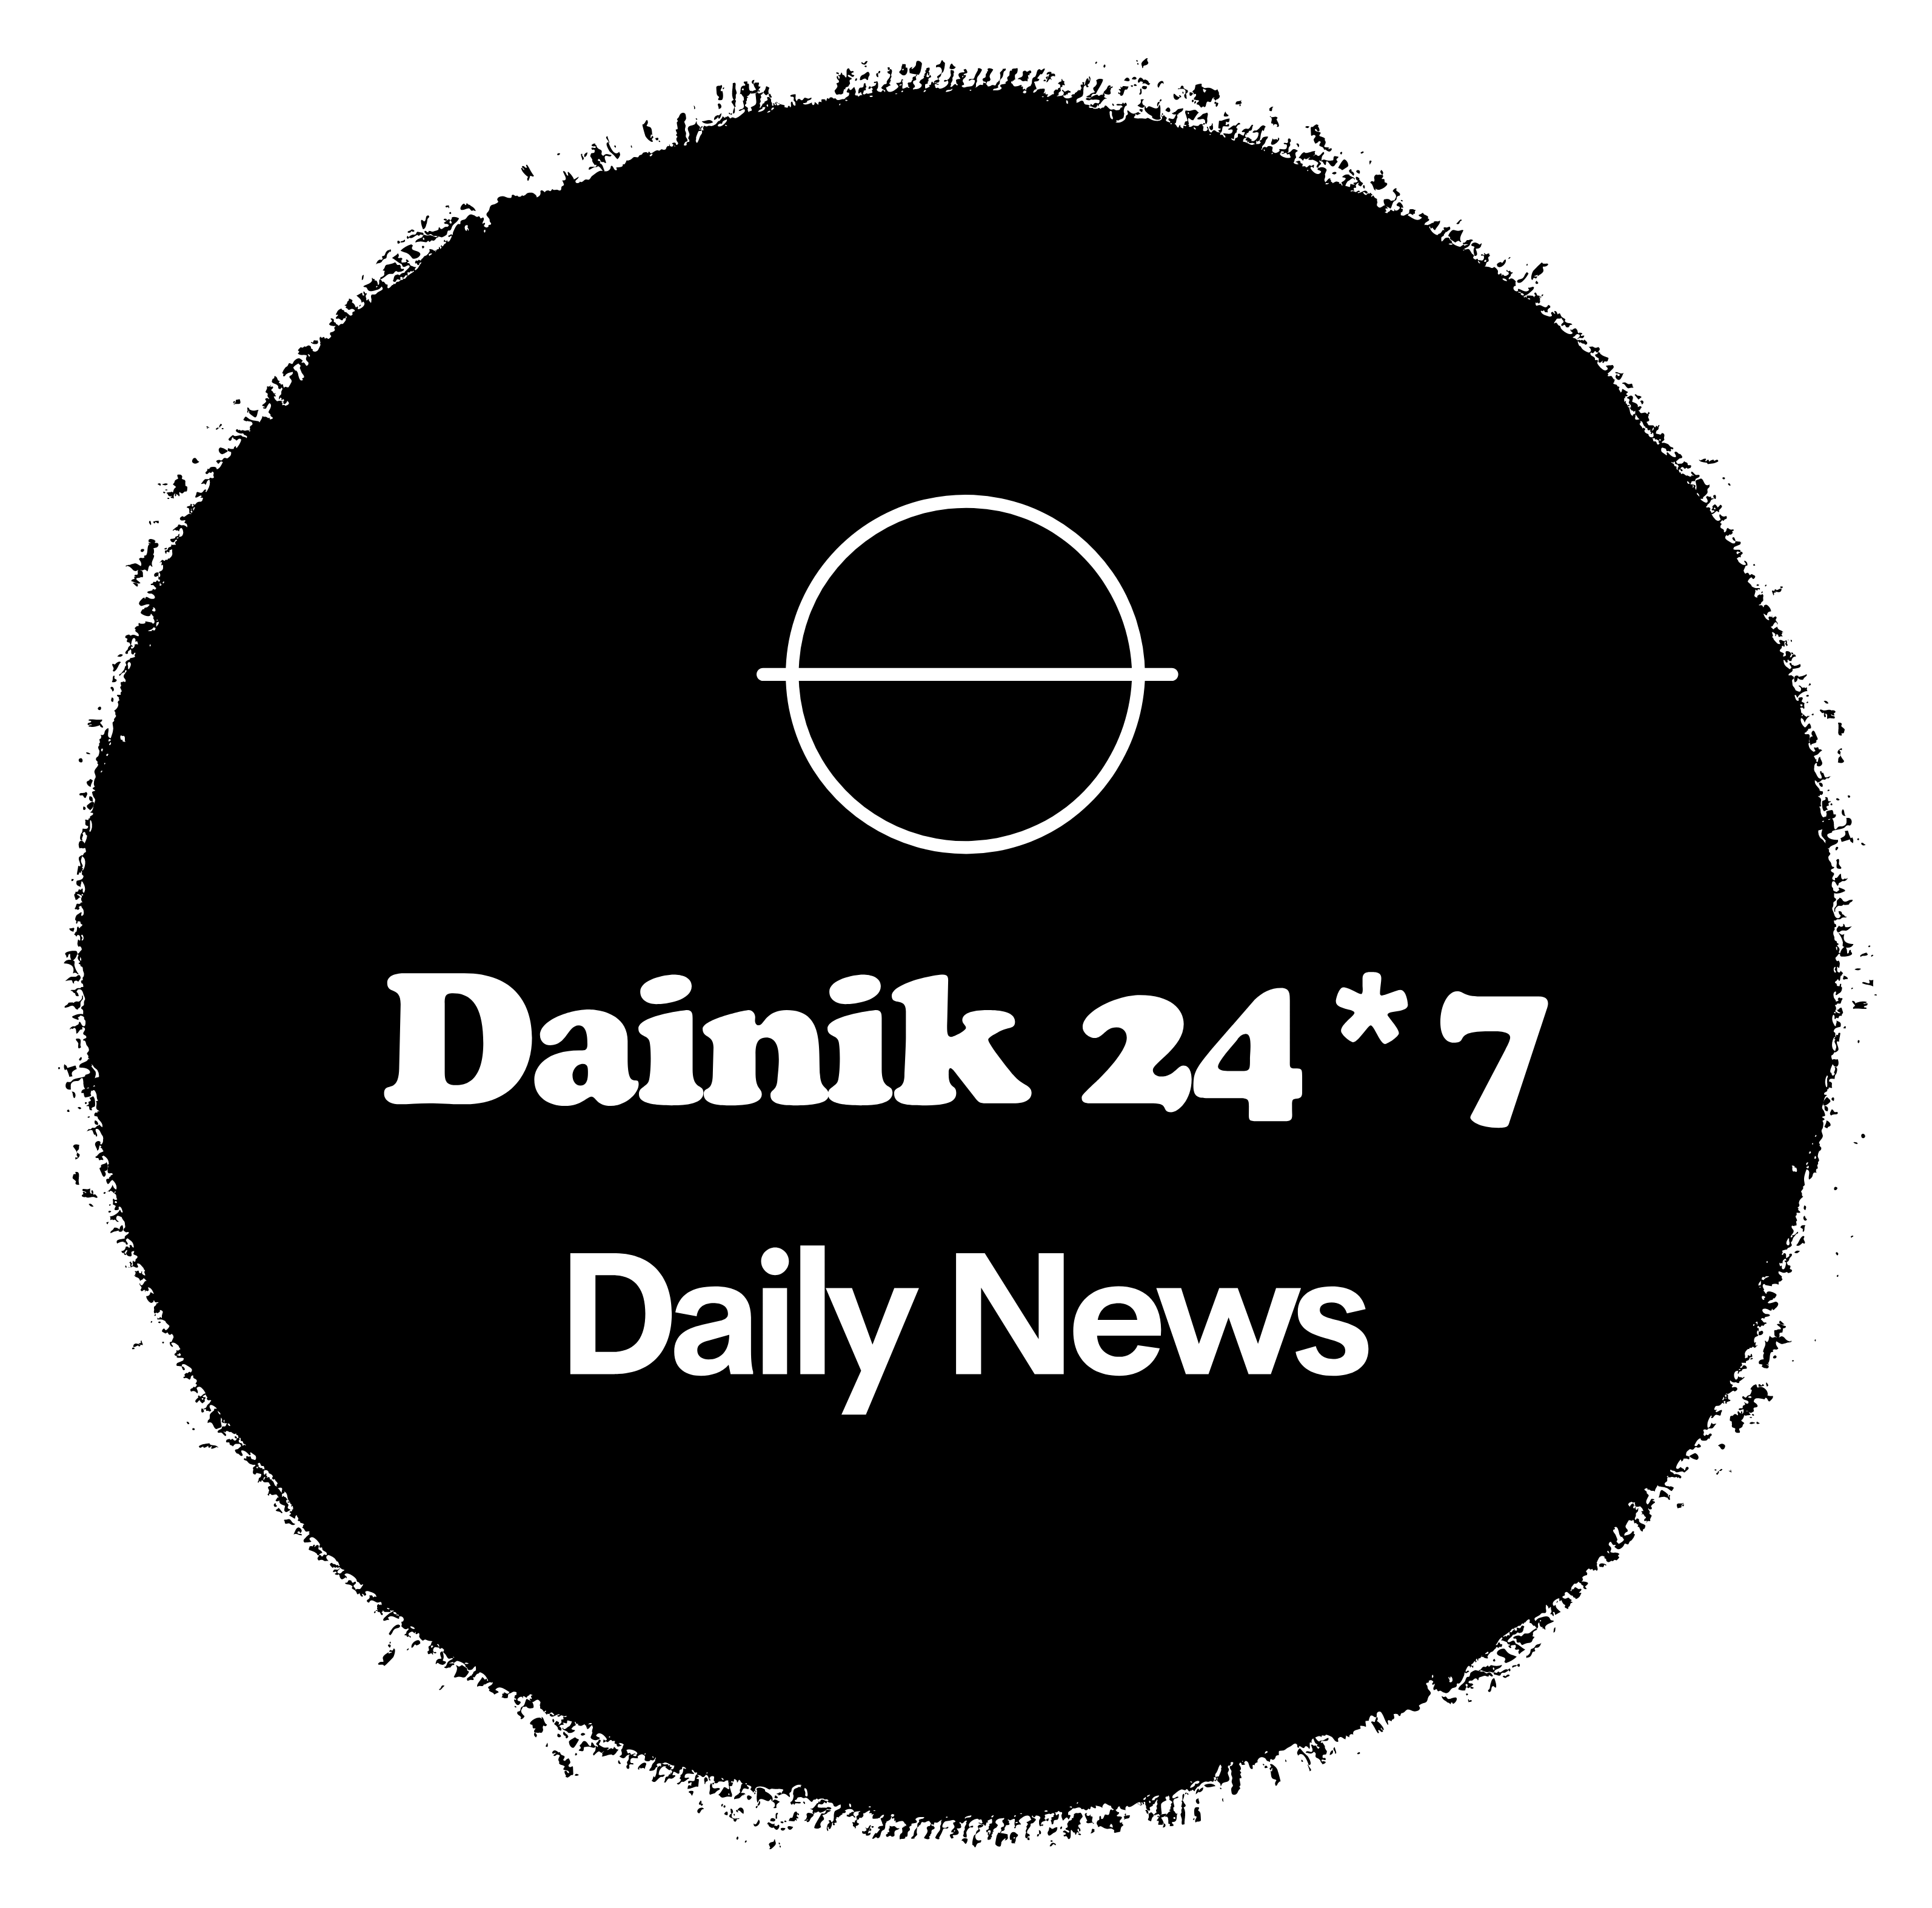 Dainik 24*7